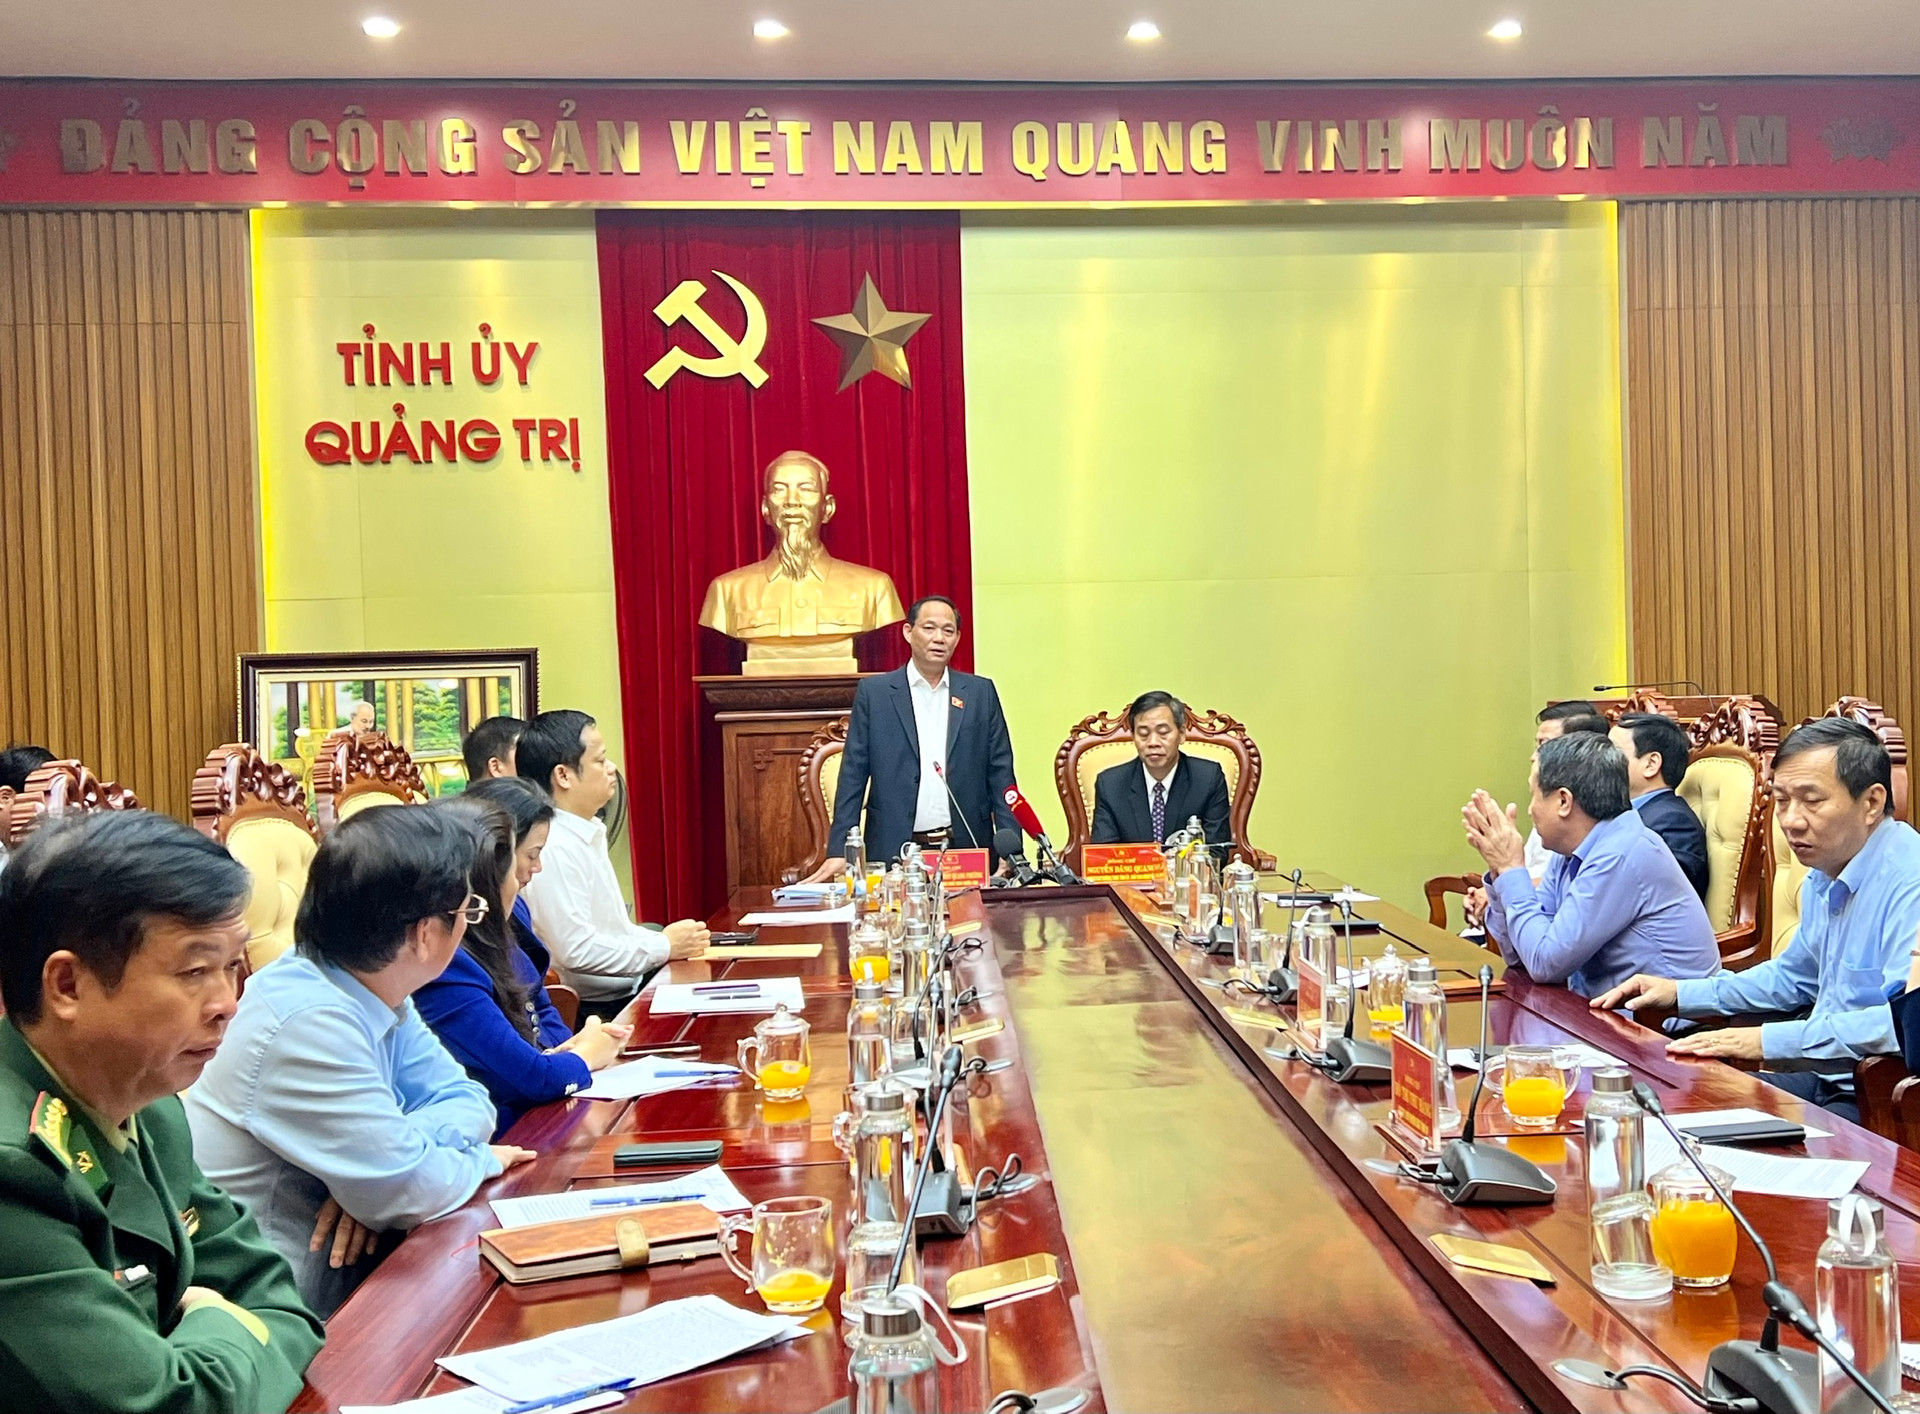 Đoàn công tác do Phó Chủ tịch Quốc hội Trần Quang Phương dẫn đầu đã đến thăm và chúc Tết tại tỉnh Quảng Trị. Ảnh: N.L.